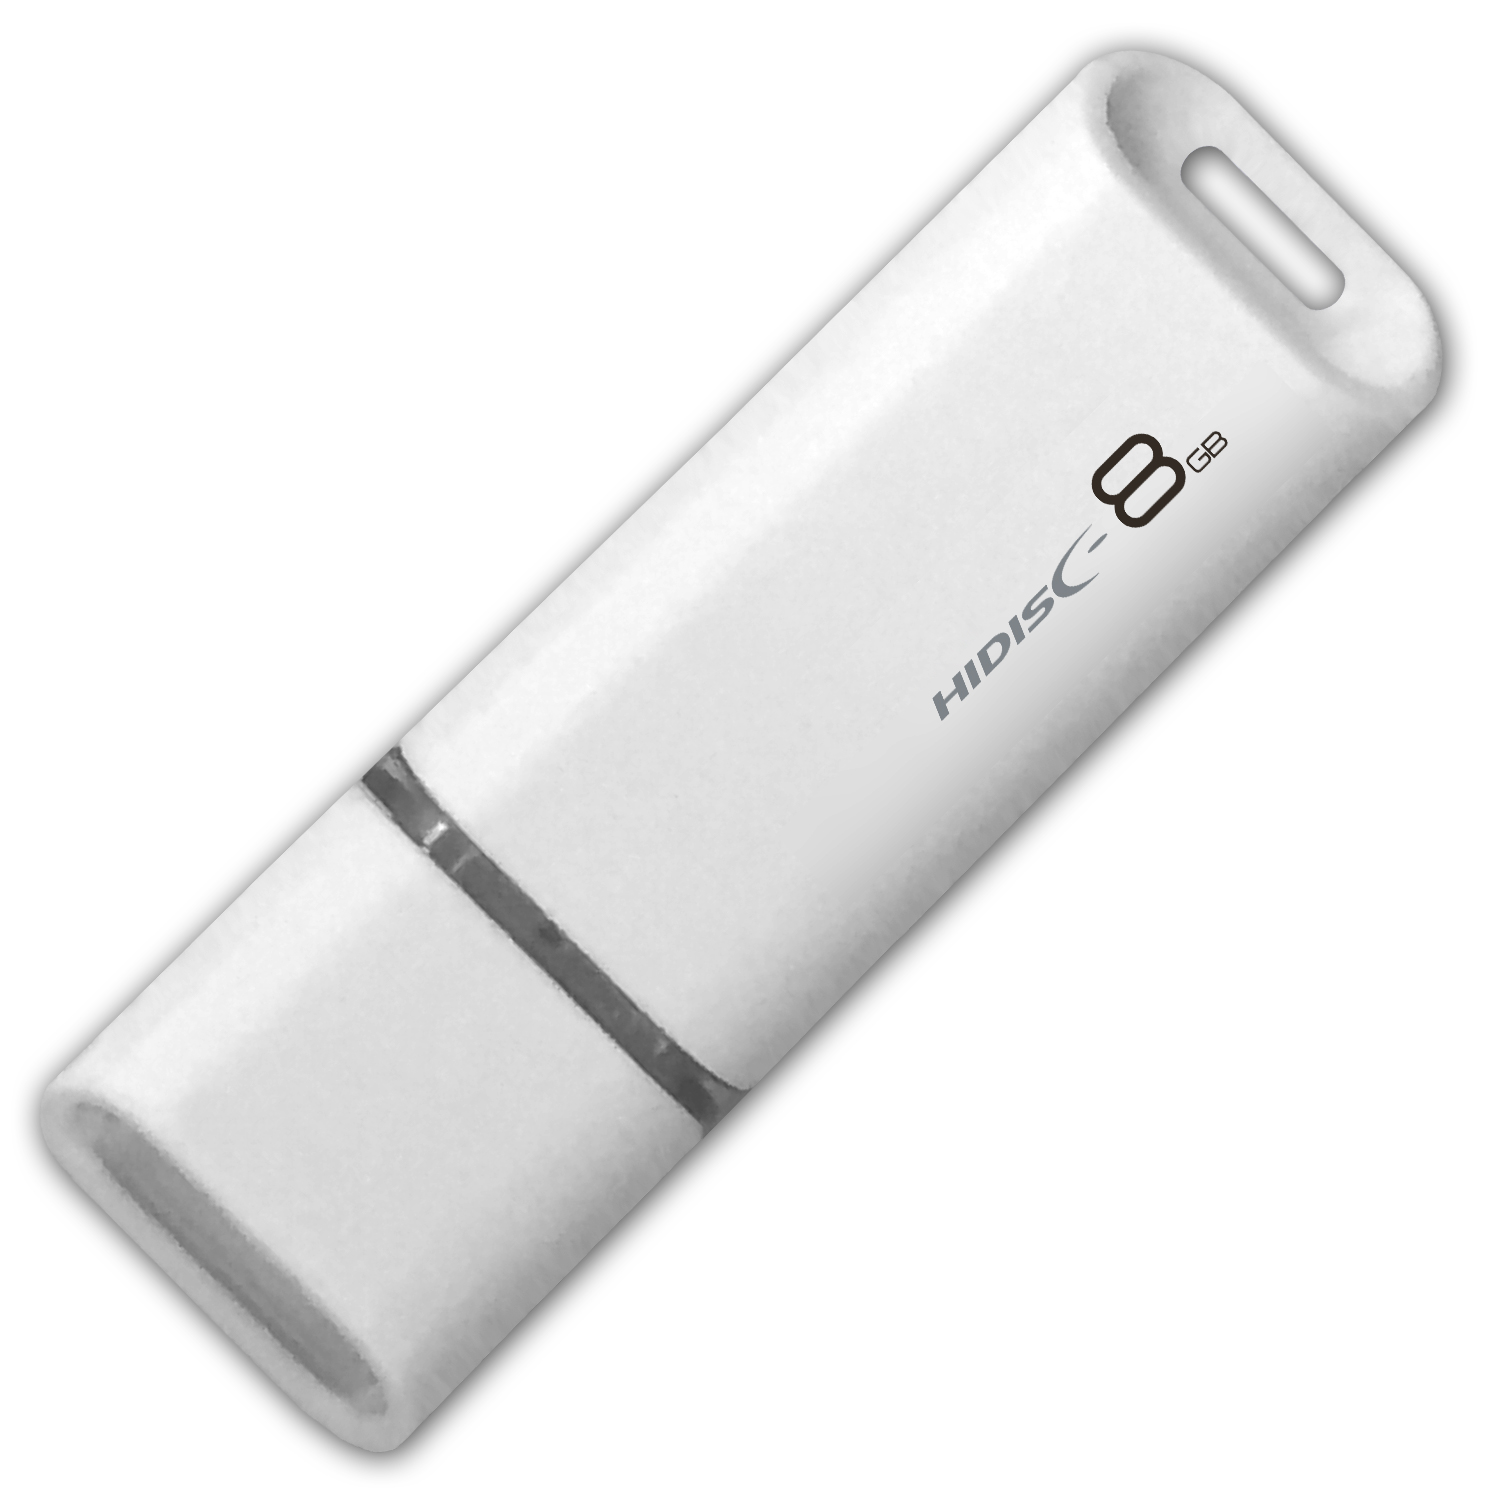 HIDISC USB 2.0 フラッシュドライブ 8GB 白 キャップ式